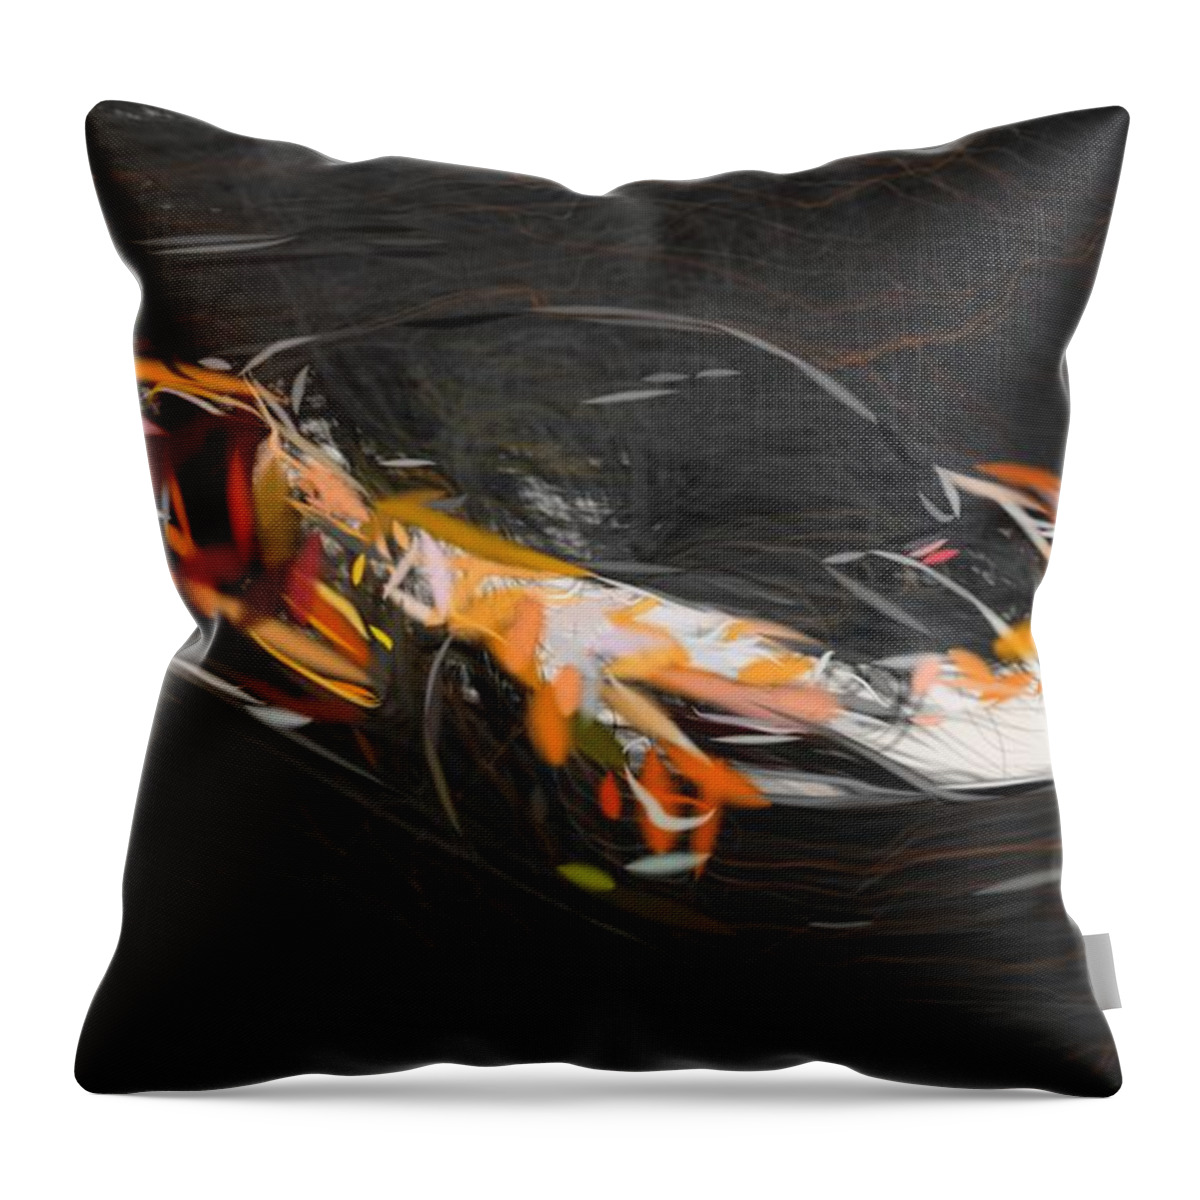 Mclaren Throw Pillow featuring the digital art McLaren Senna GTR Drawing by CarsToon Concept